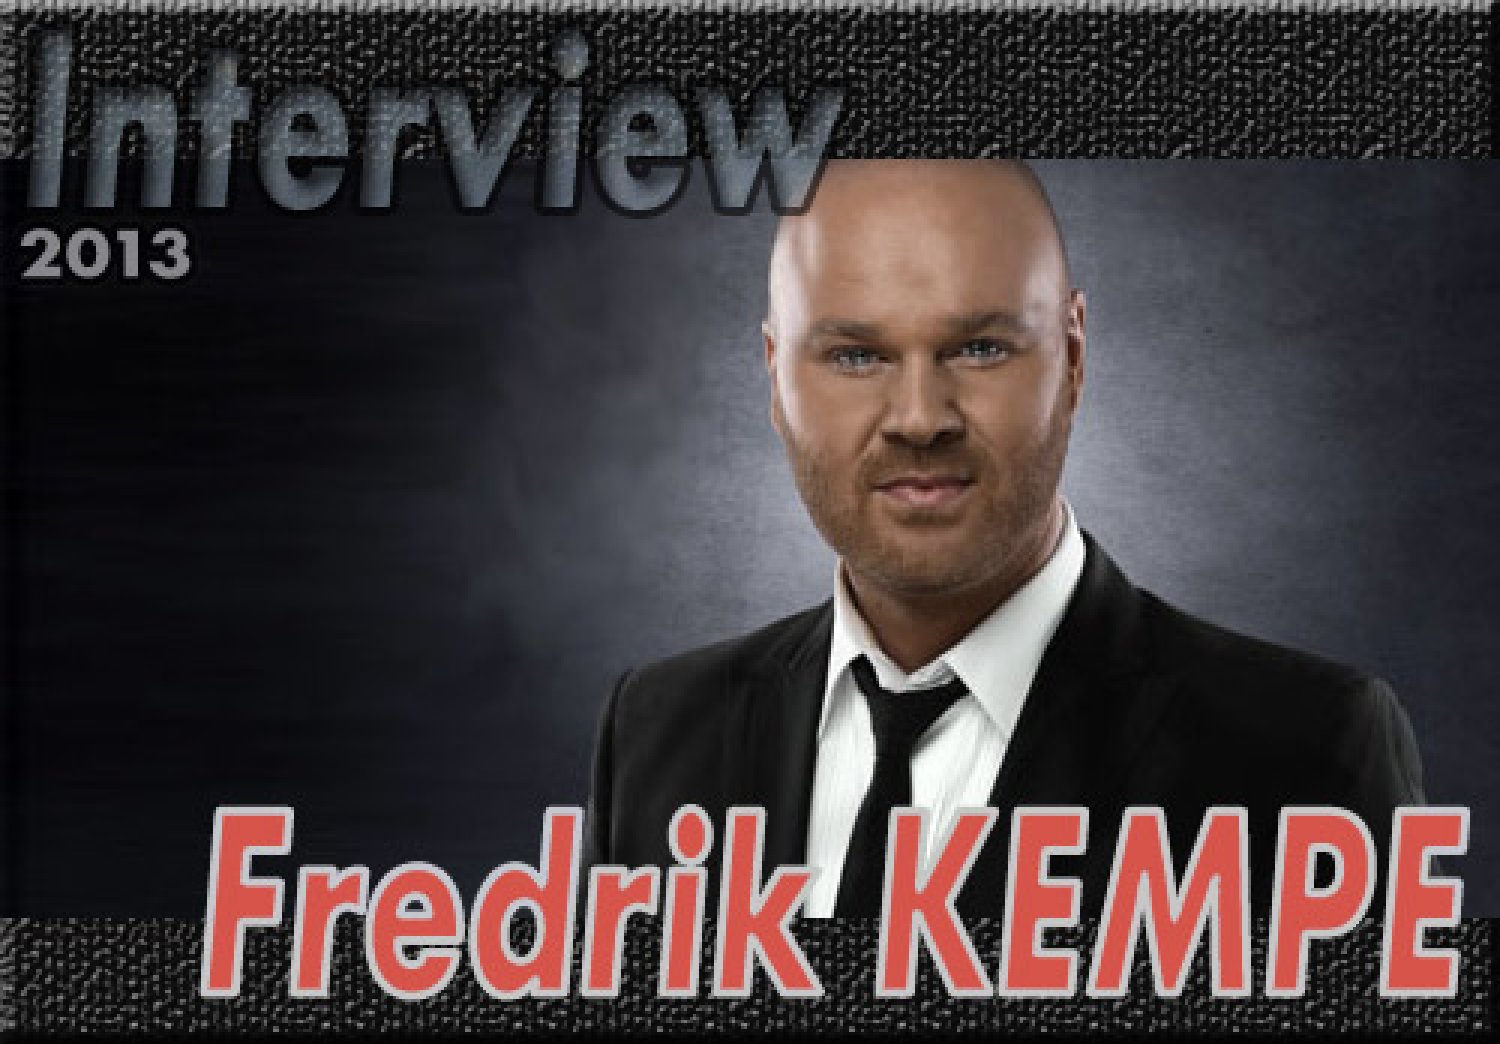 Fredrik Kempe (Interview 2013)